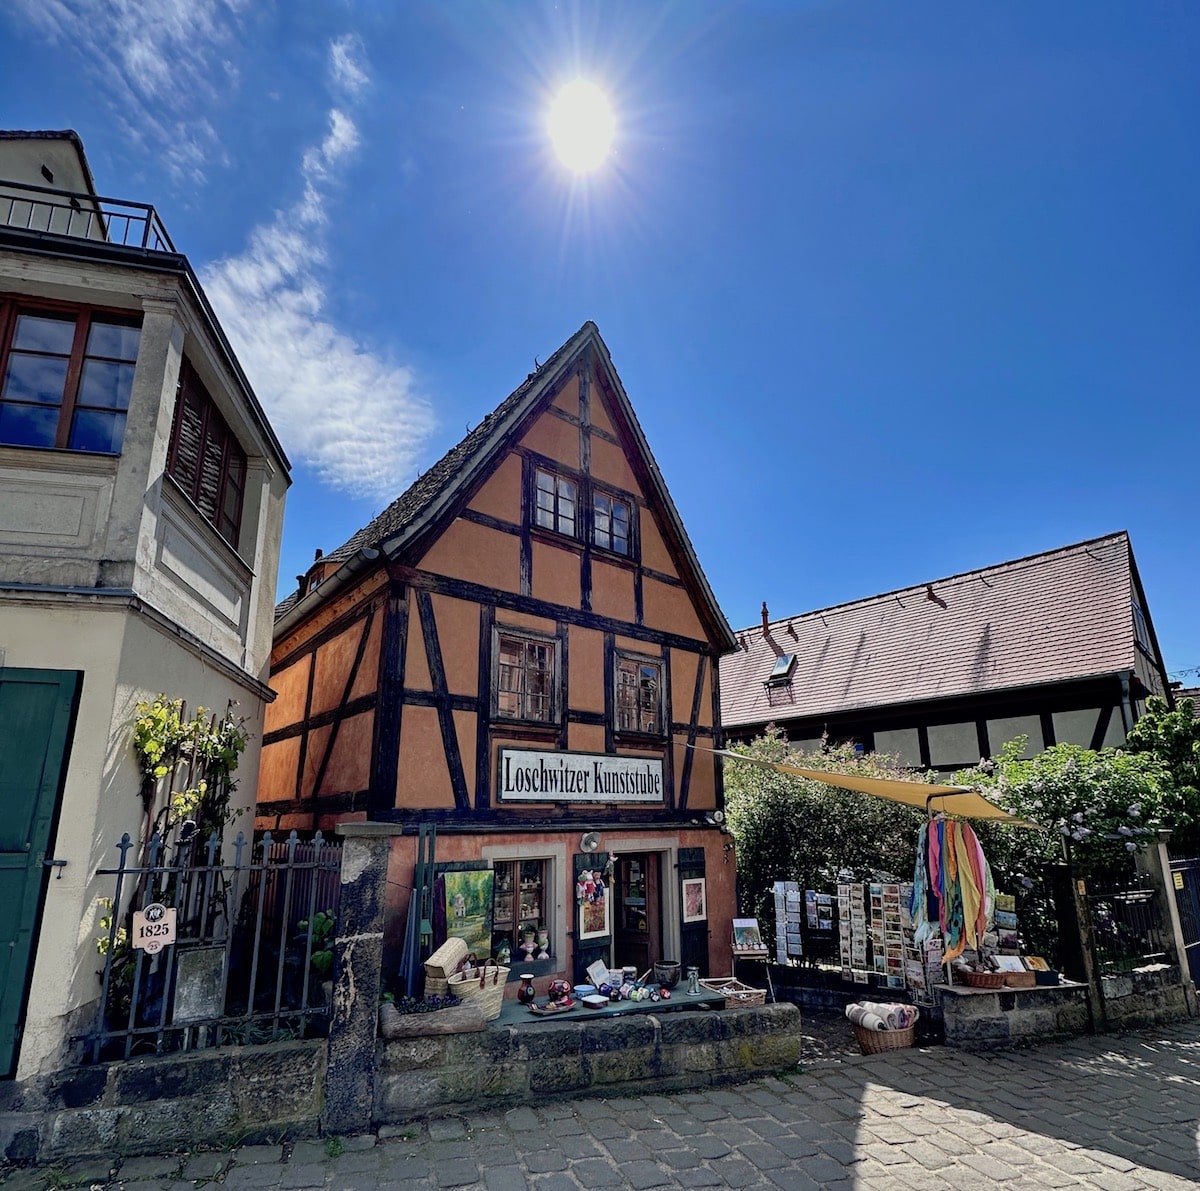 Ganz zauberhaft: der alte Dorfkern von Loschwitz